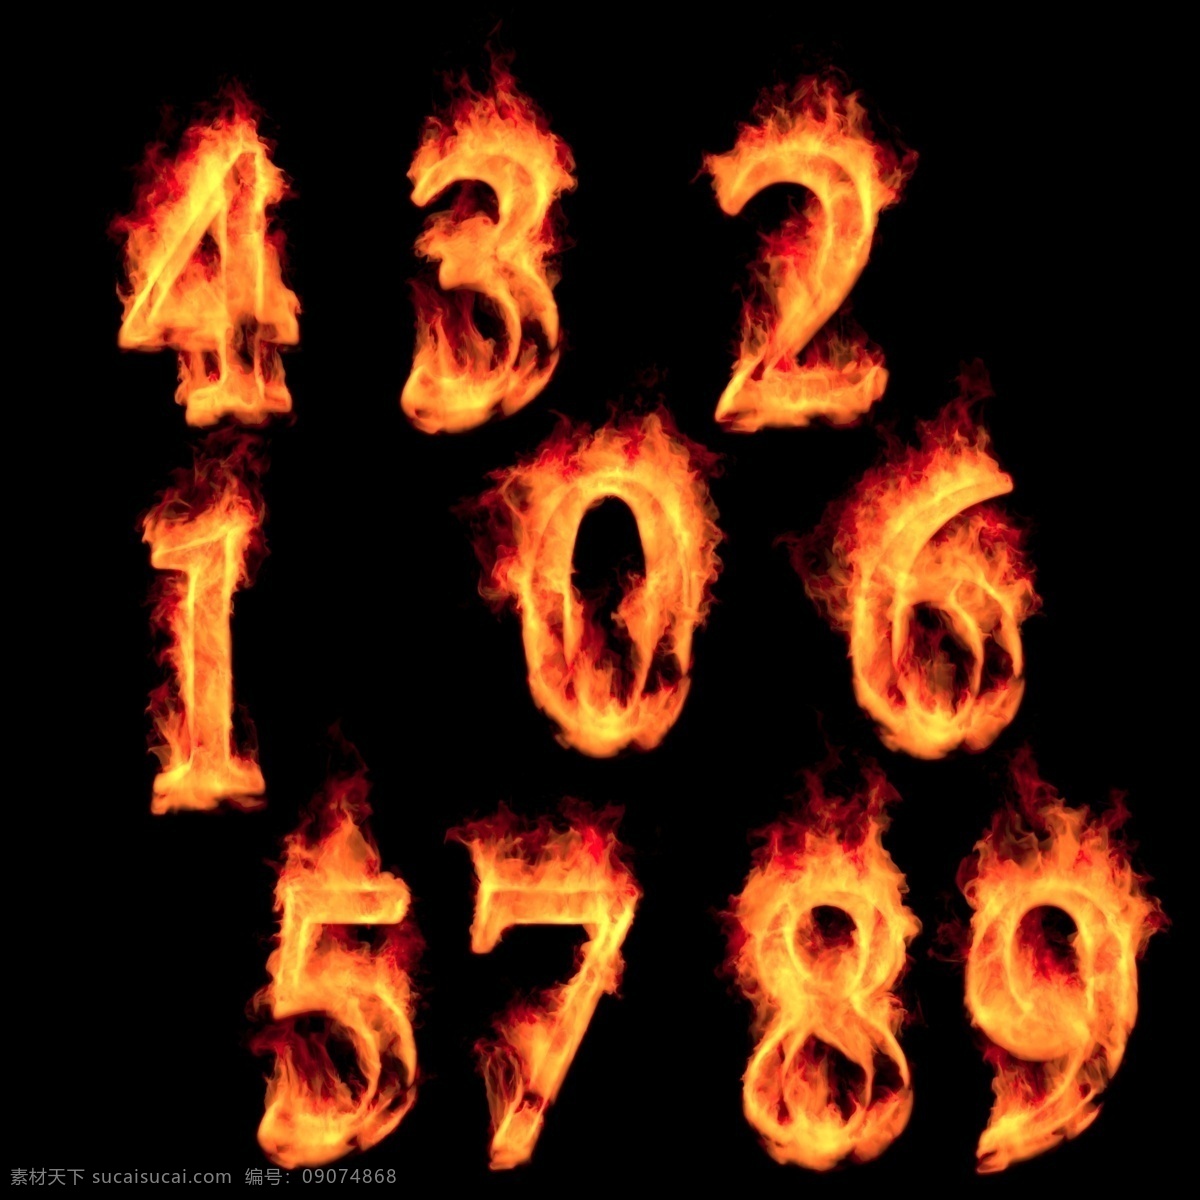 火焰特效文字 火焰字 火 燃烧的字 火焰 数字 特效数字 火焰数字 阿拉伯数字 熔岩数字 燃烧的数字 火苗 红色火焰 火焰文字 图标 标志图标 其他图标